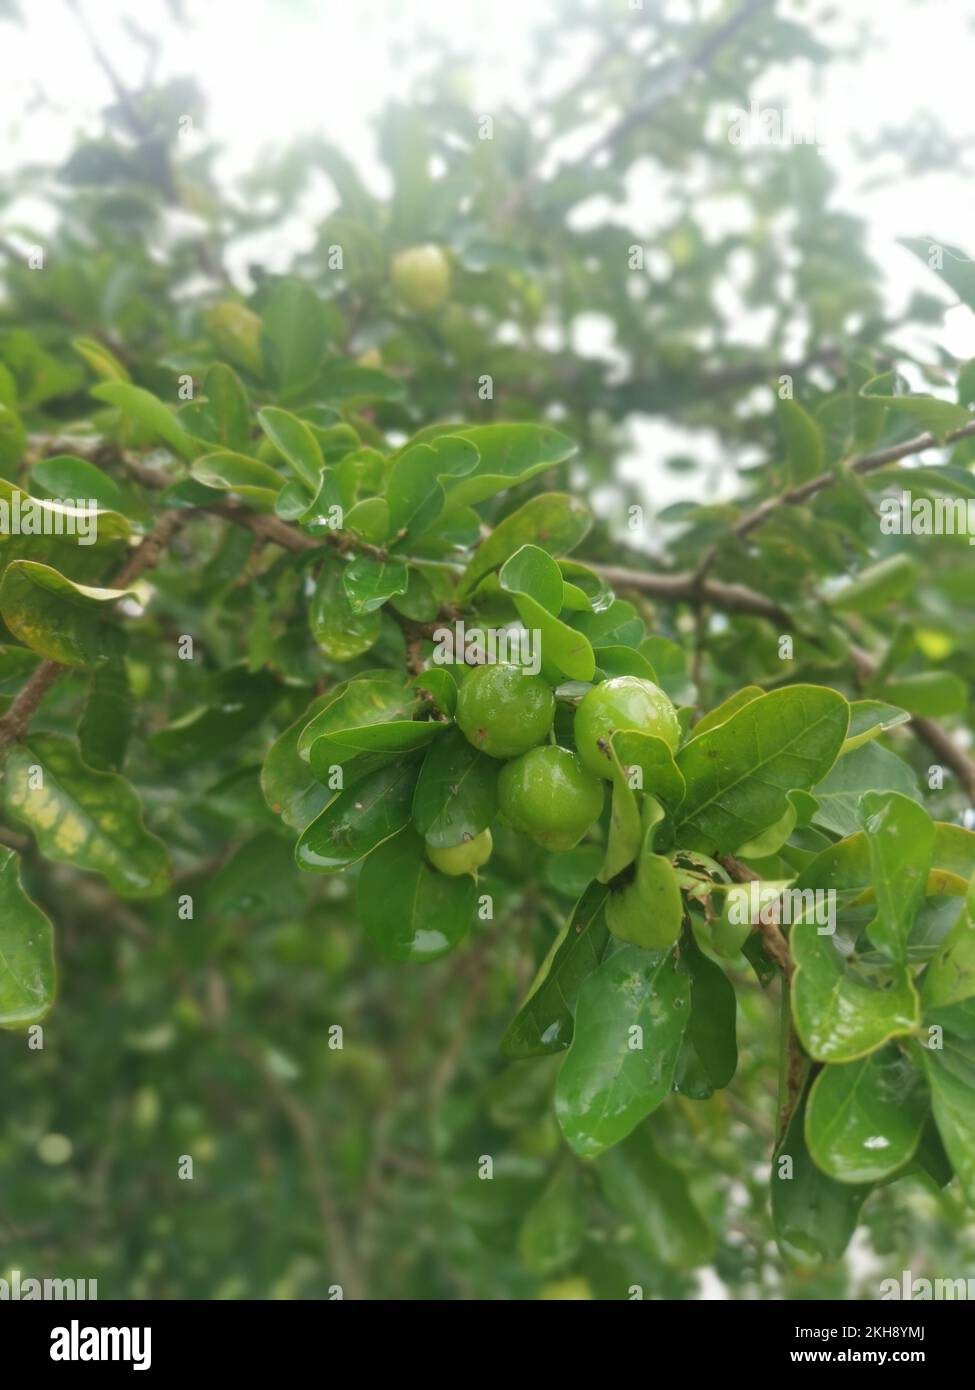 wild malgighia glabra plant bearing fruits. Stock Photo